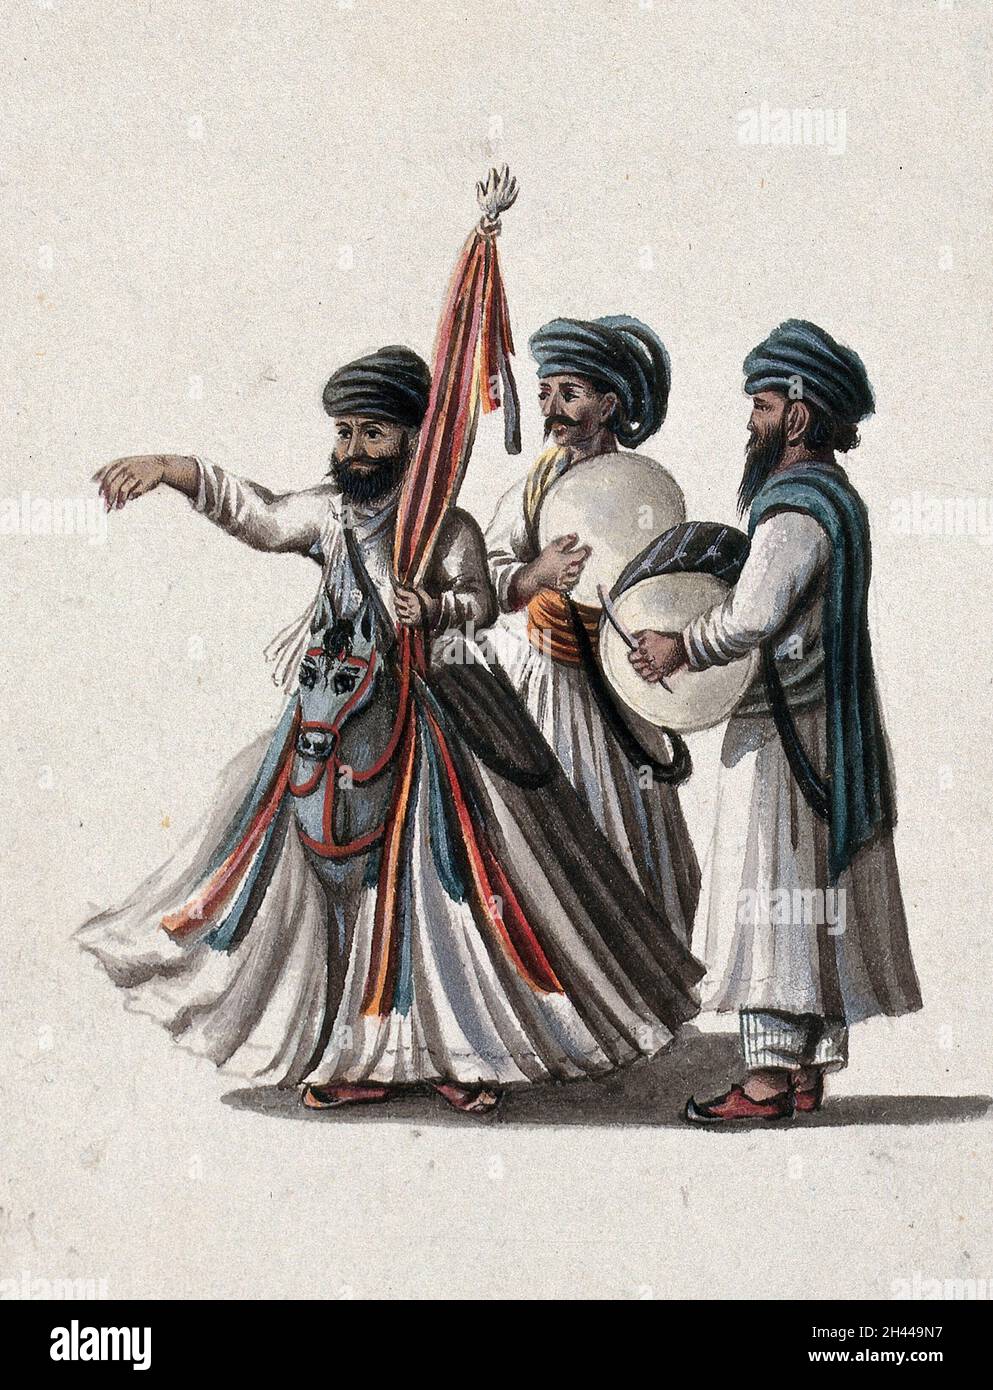 Un interprète de rue accompagné de deux musiciens.Peinture de gouache par un artiste indien. Banque D'Images